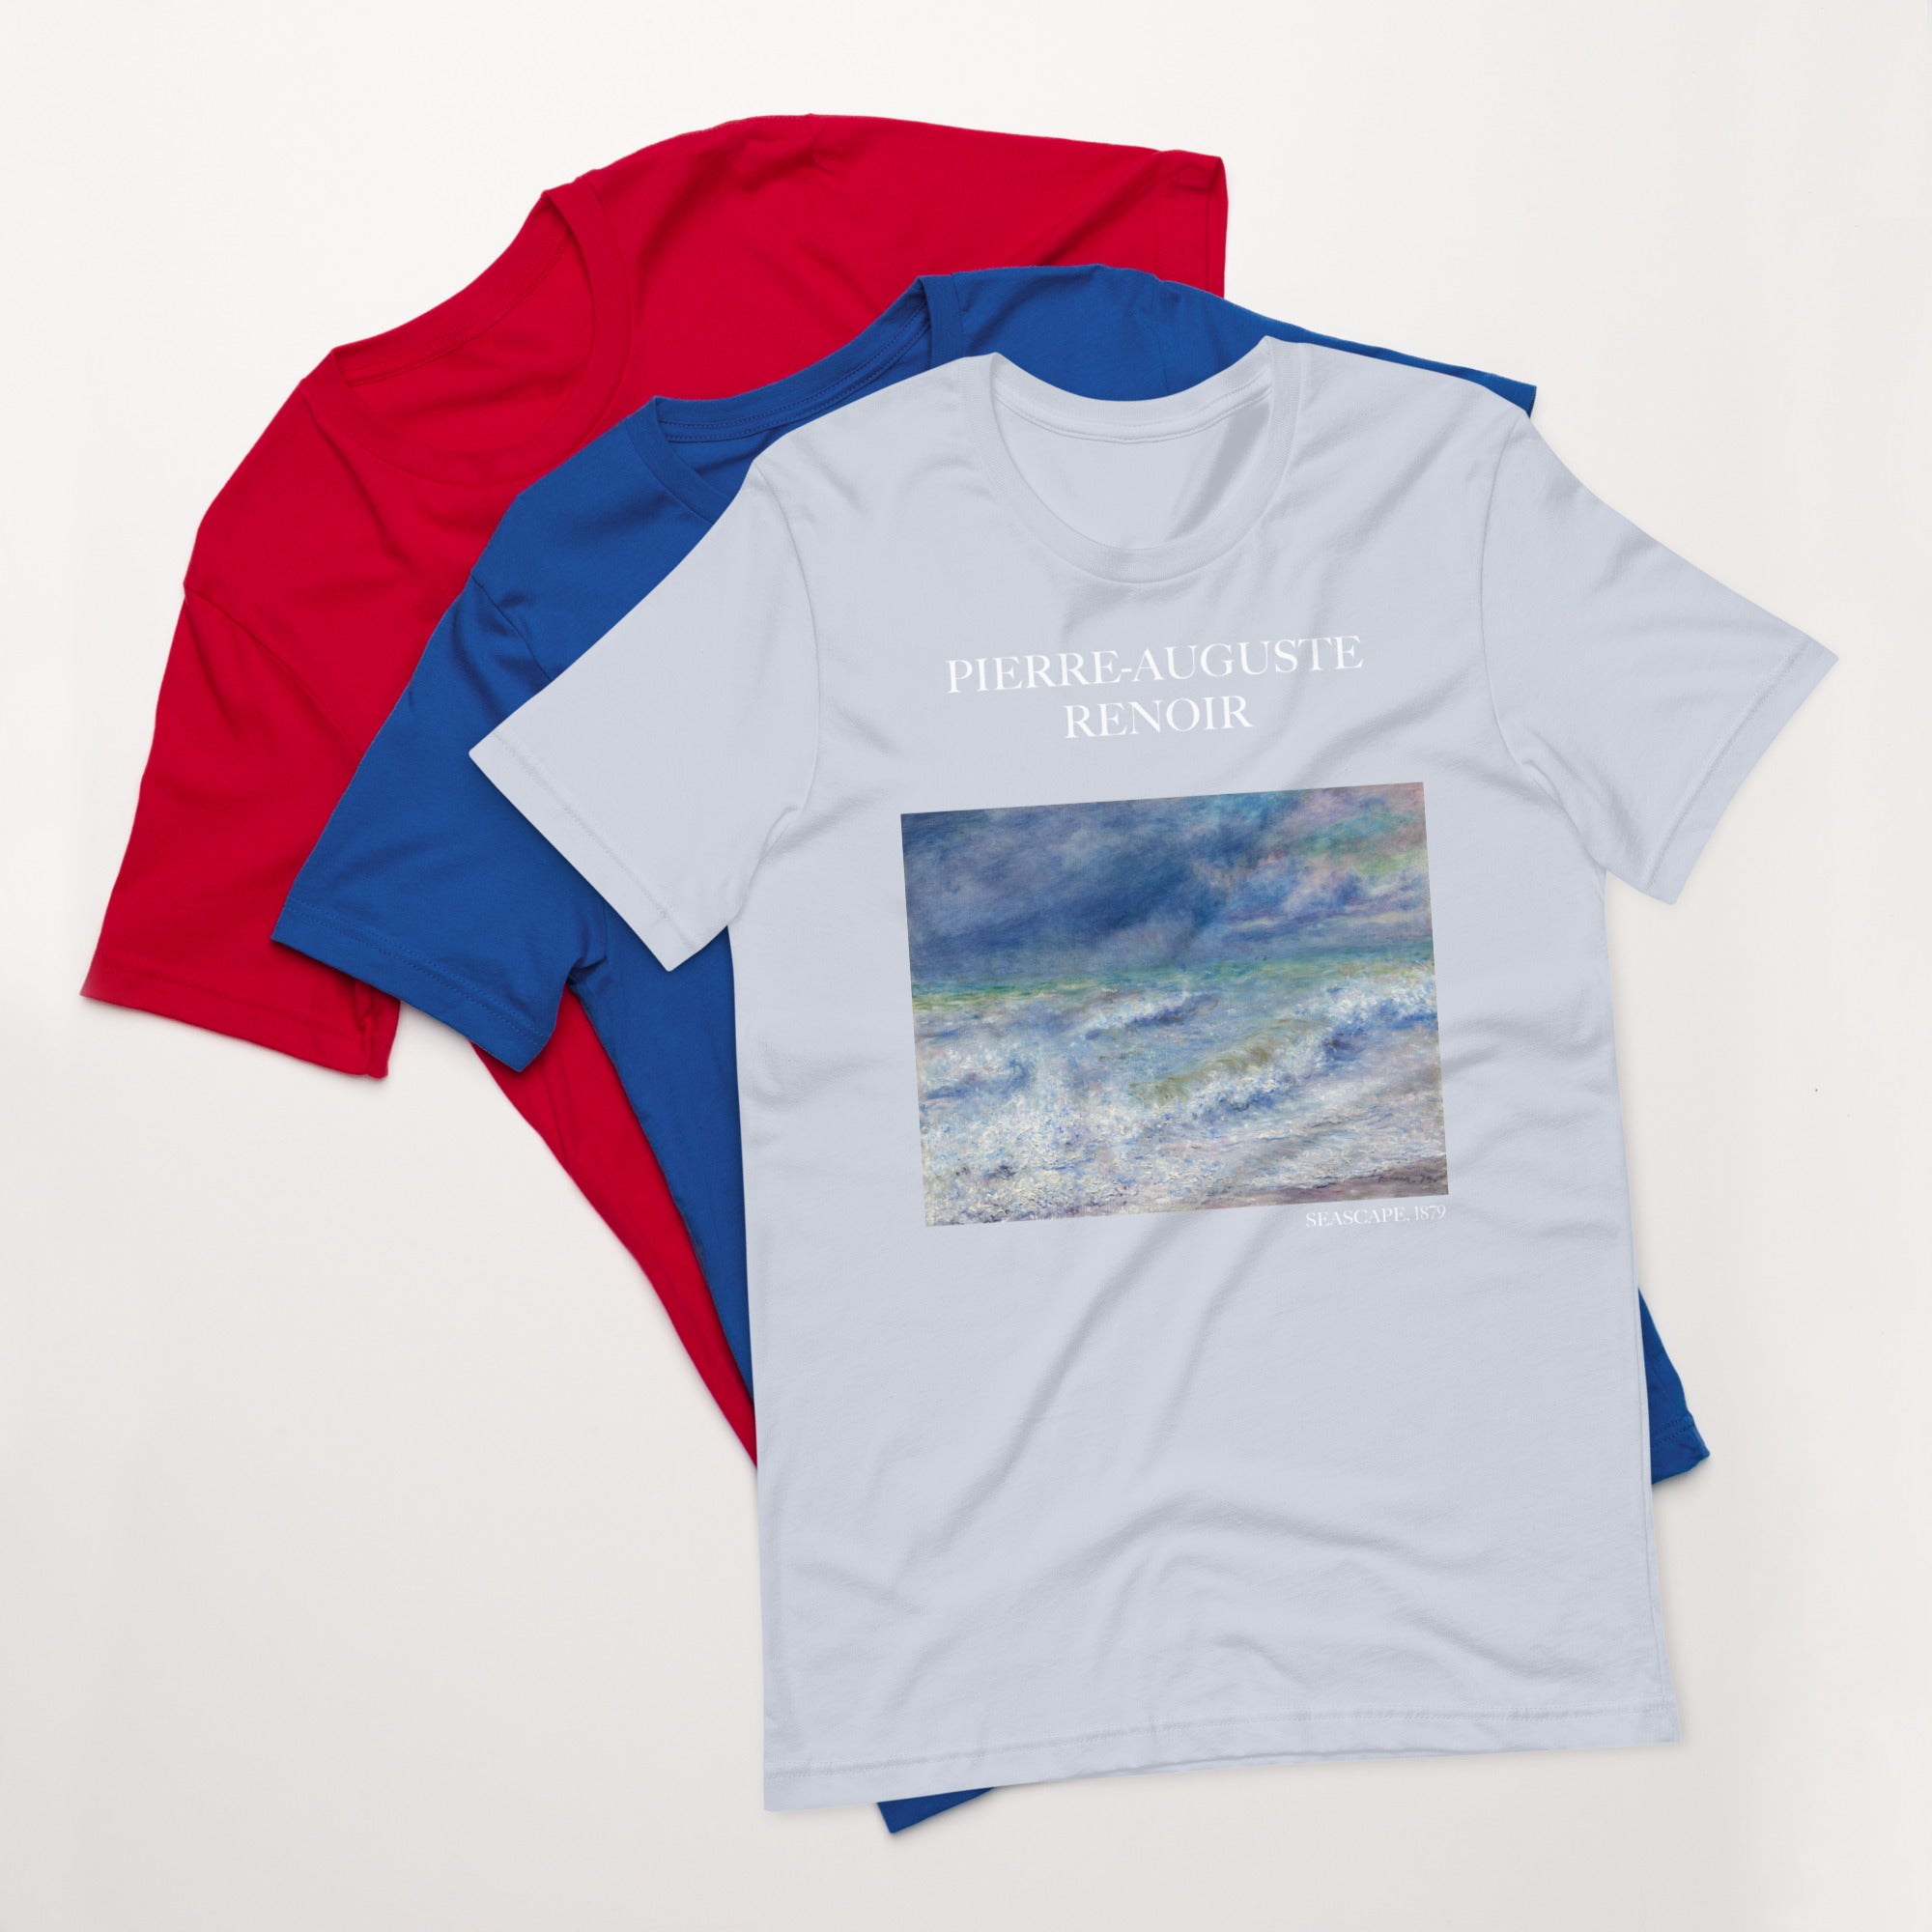 Pierre-Auguste Renoir 'Seascape' Famous Painting T-Shirt | Unisex Classic Art Tee